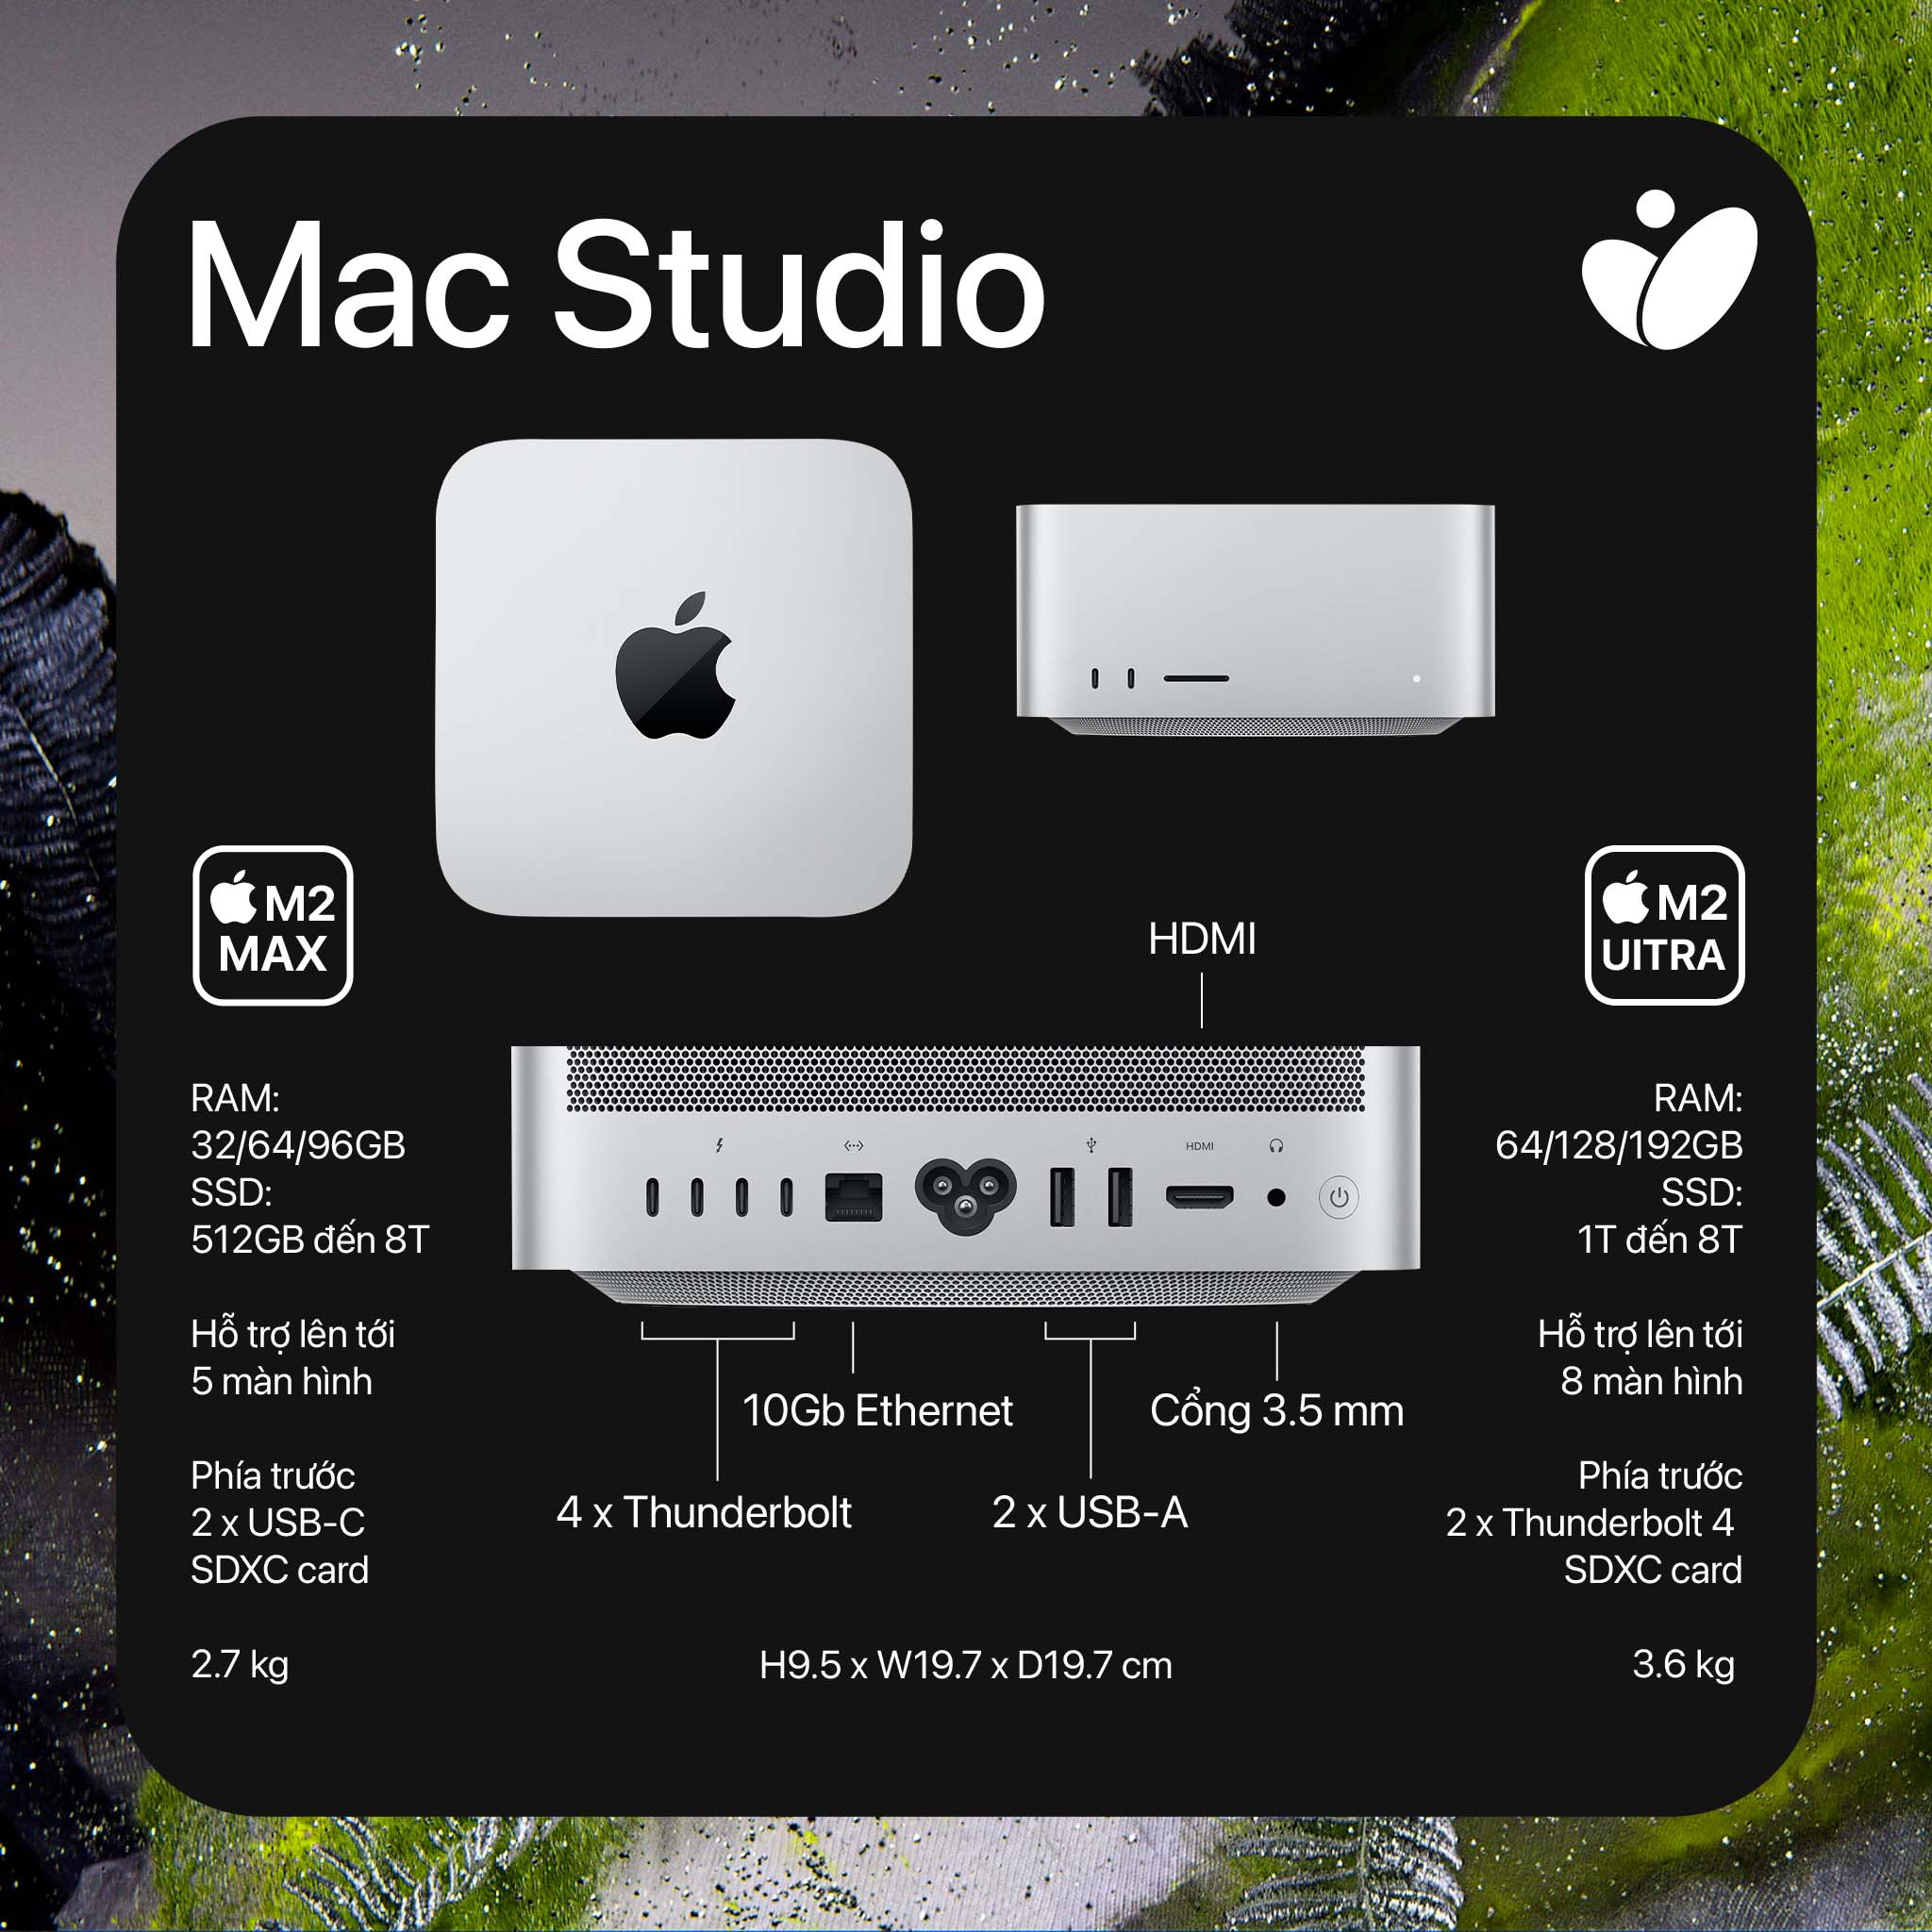 mac studio specs-tinhte.jpg